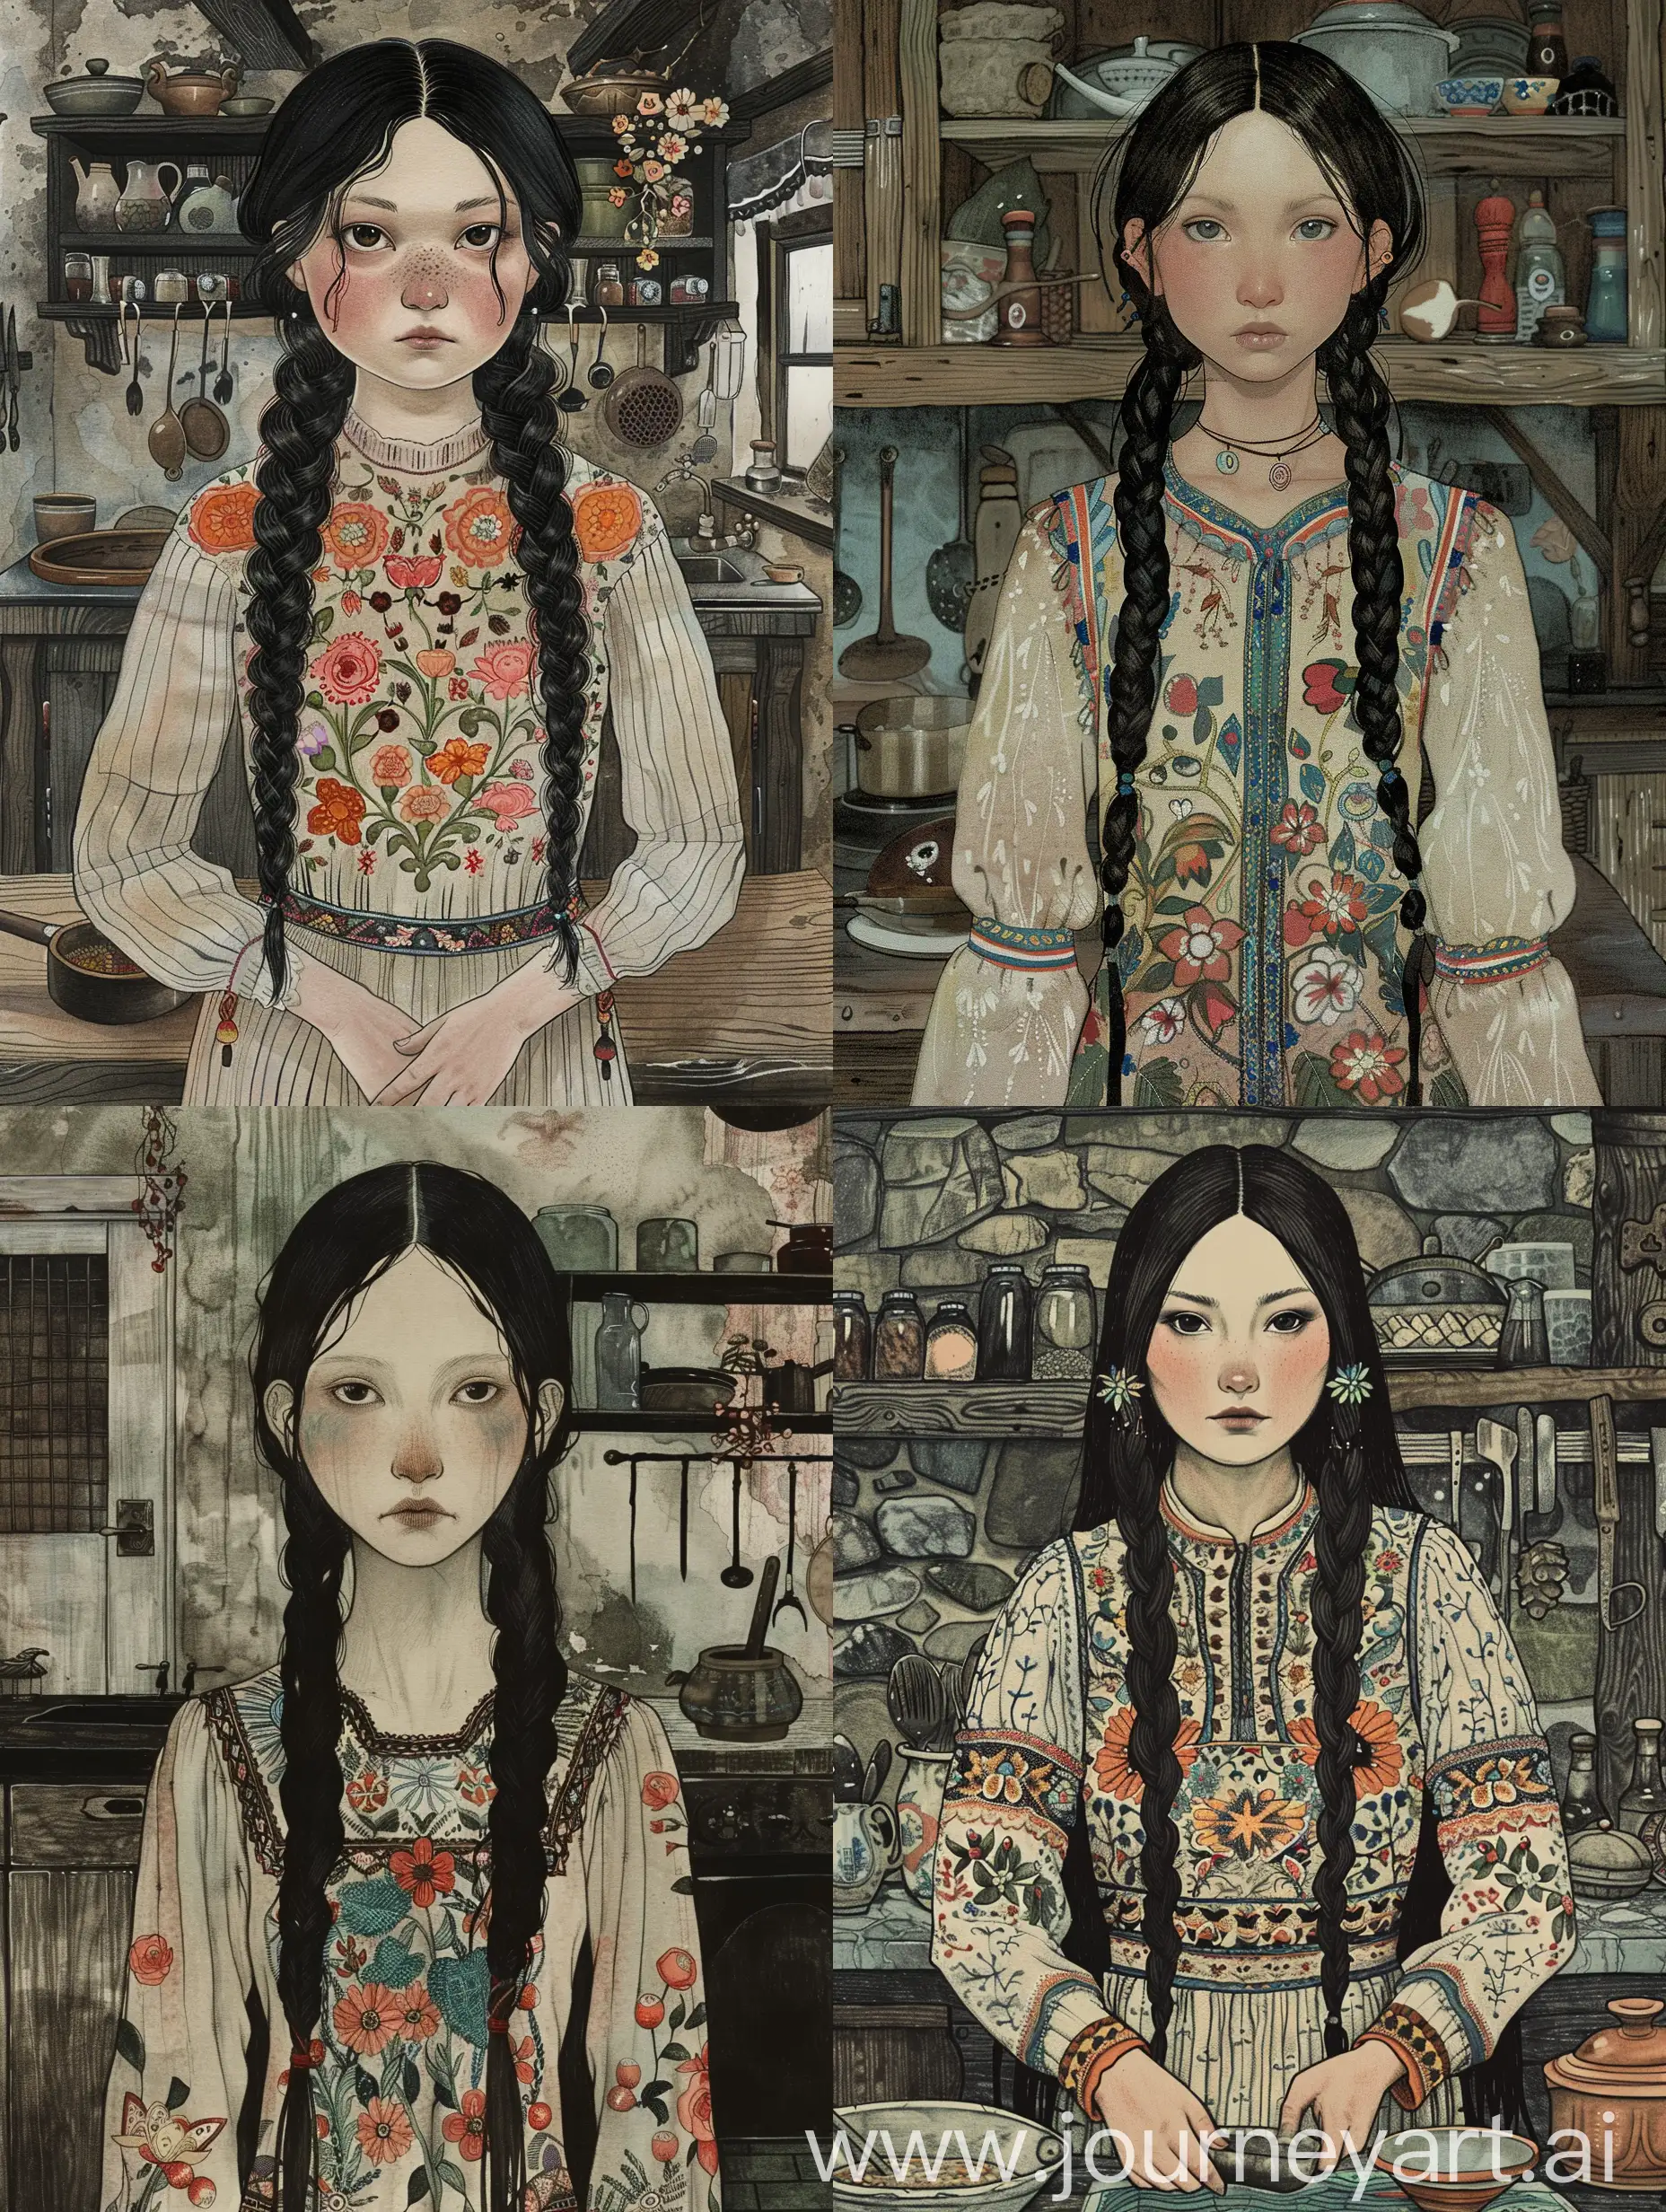 Indigene Frau vom Baikal. Sie hat langes schwarzes Haar in zwei geflochtenen Zöpfen. Ihre Gesichtszüge sind asiatisch wie bei den Burjaten. Sie trägt ein traditionell mit Blumen besticktes Kleid. Sie steht in einer Hexenküche und kocht etwas.